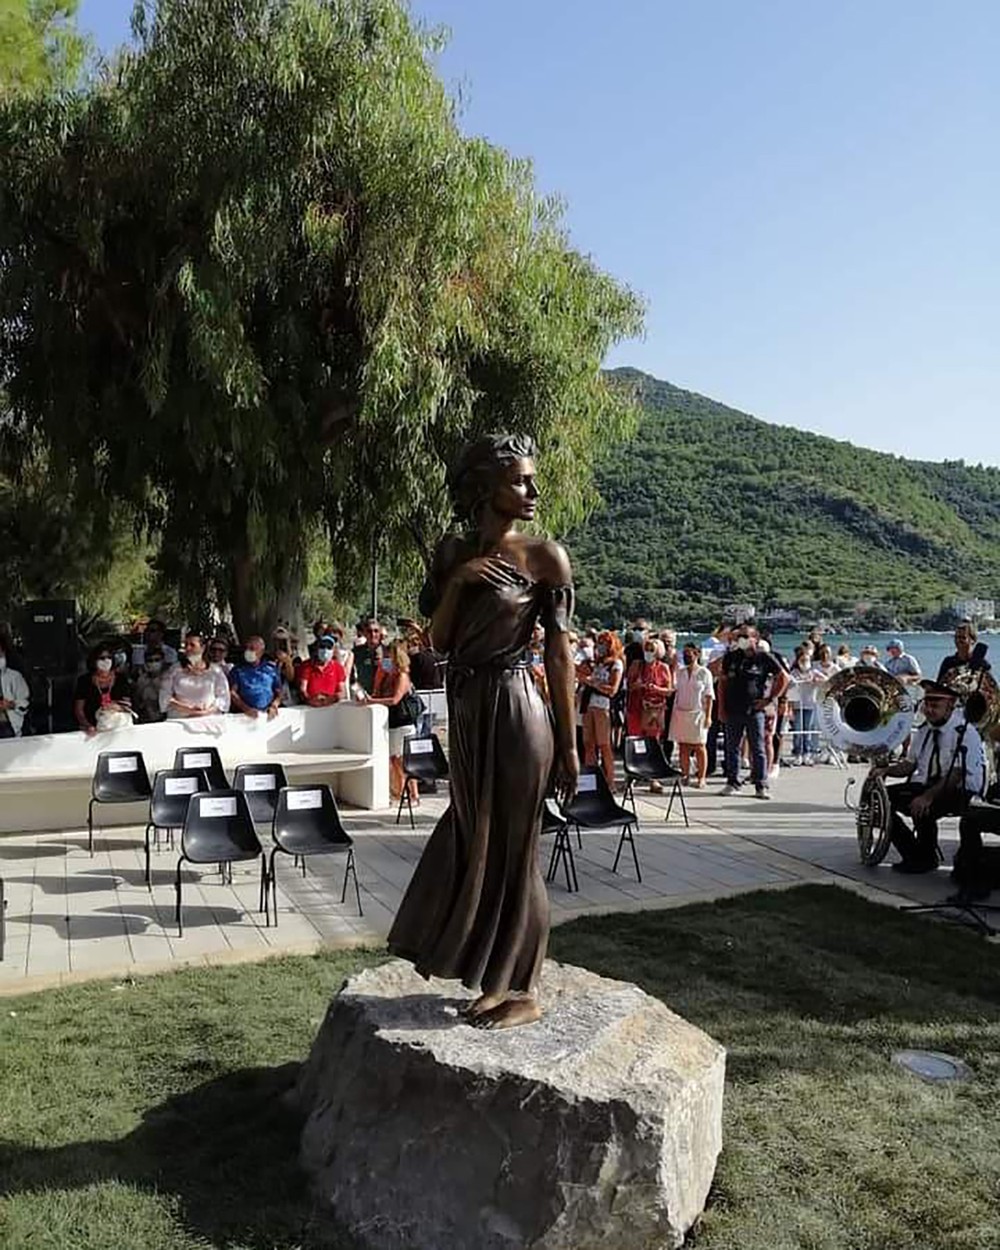 Scandal în Italia din cauza statuii unei femei îmbrăcate sumar. Politicienii cer demolarea acesteia: ”Este o ofensă”